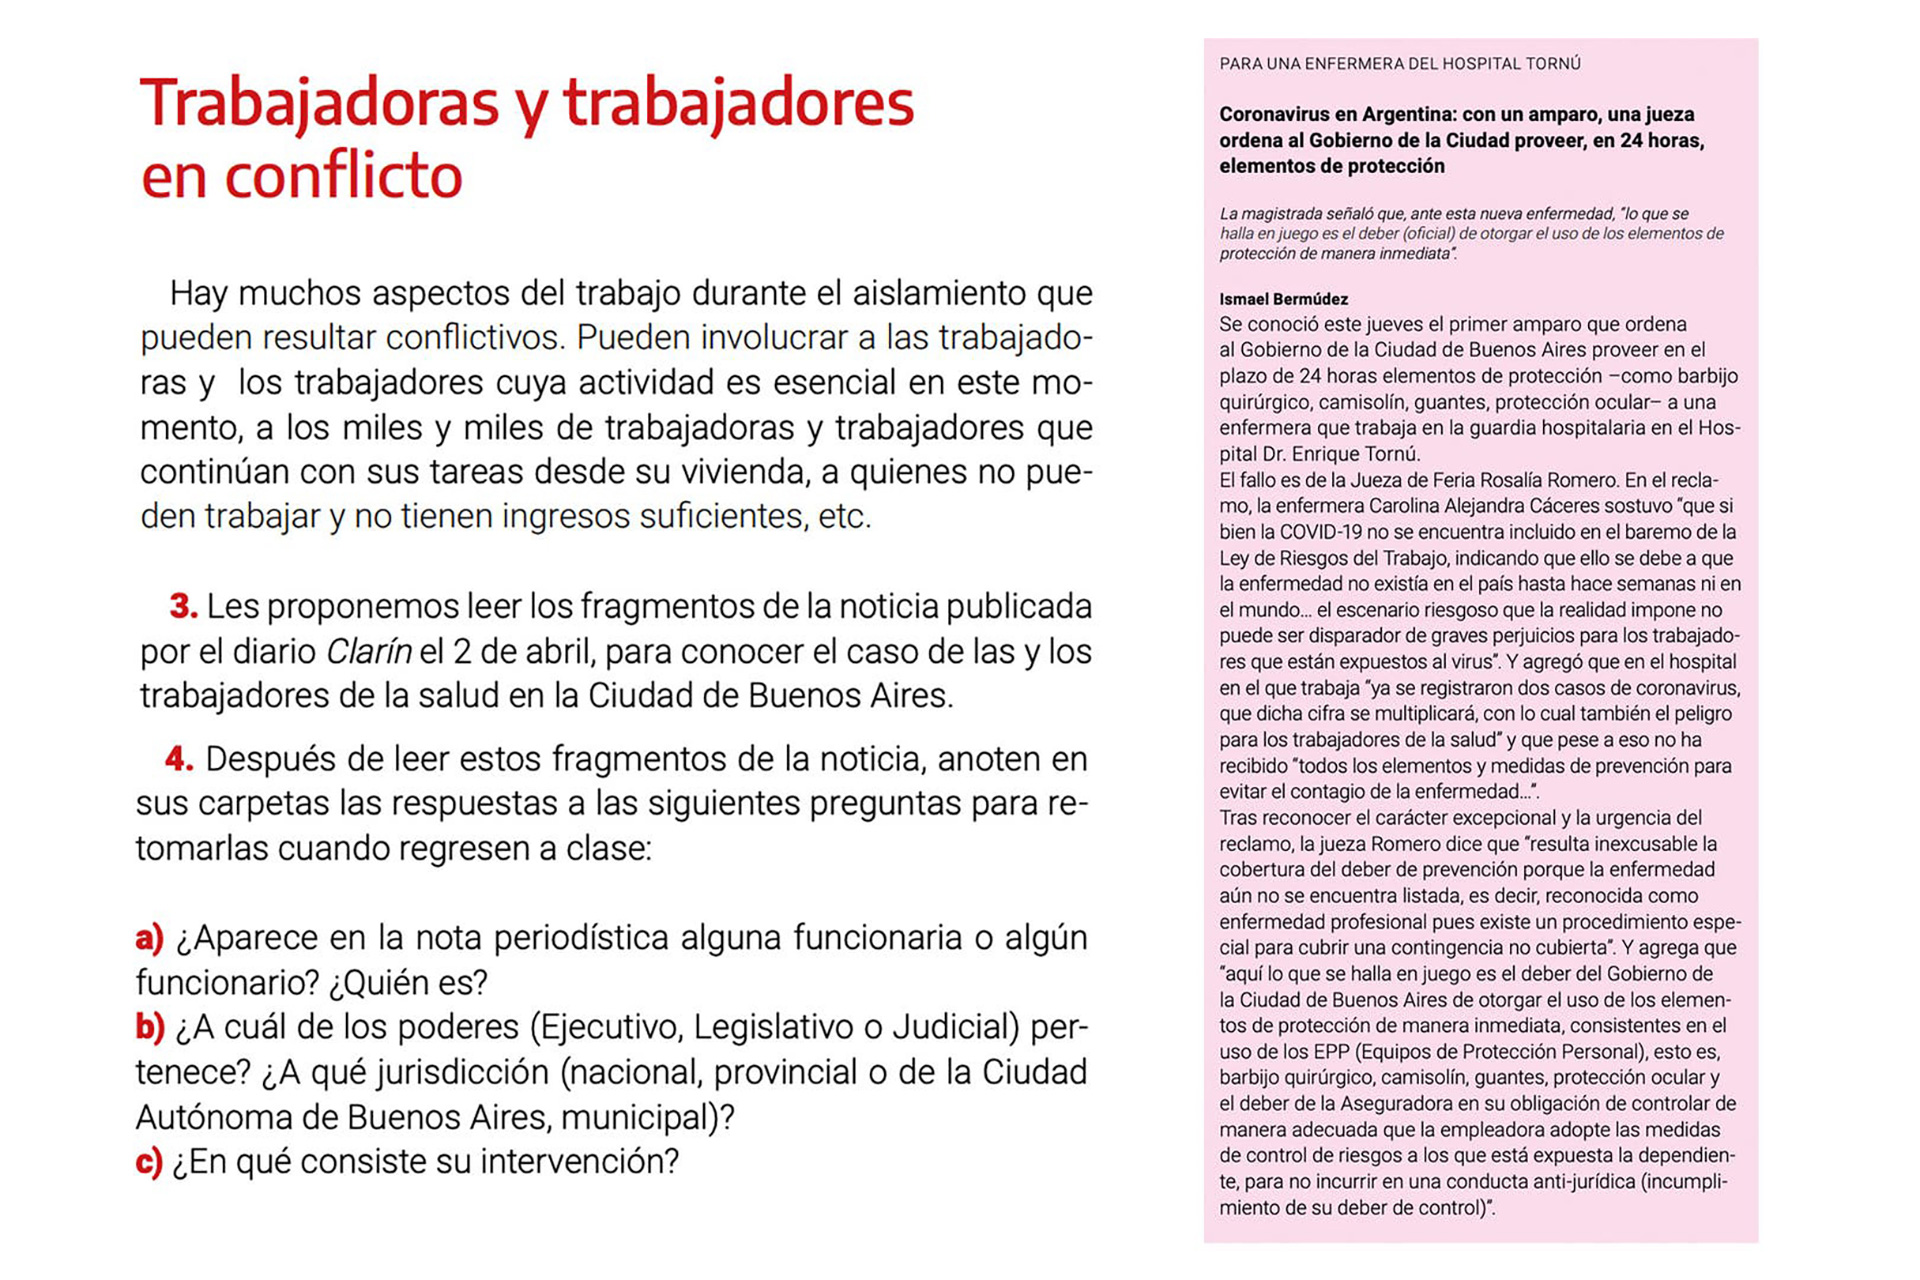 Se incluye un artículo que afecta al gobierno de Horacio Rodríguez Larreta